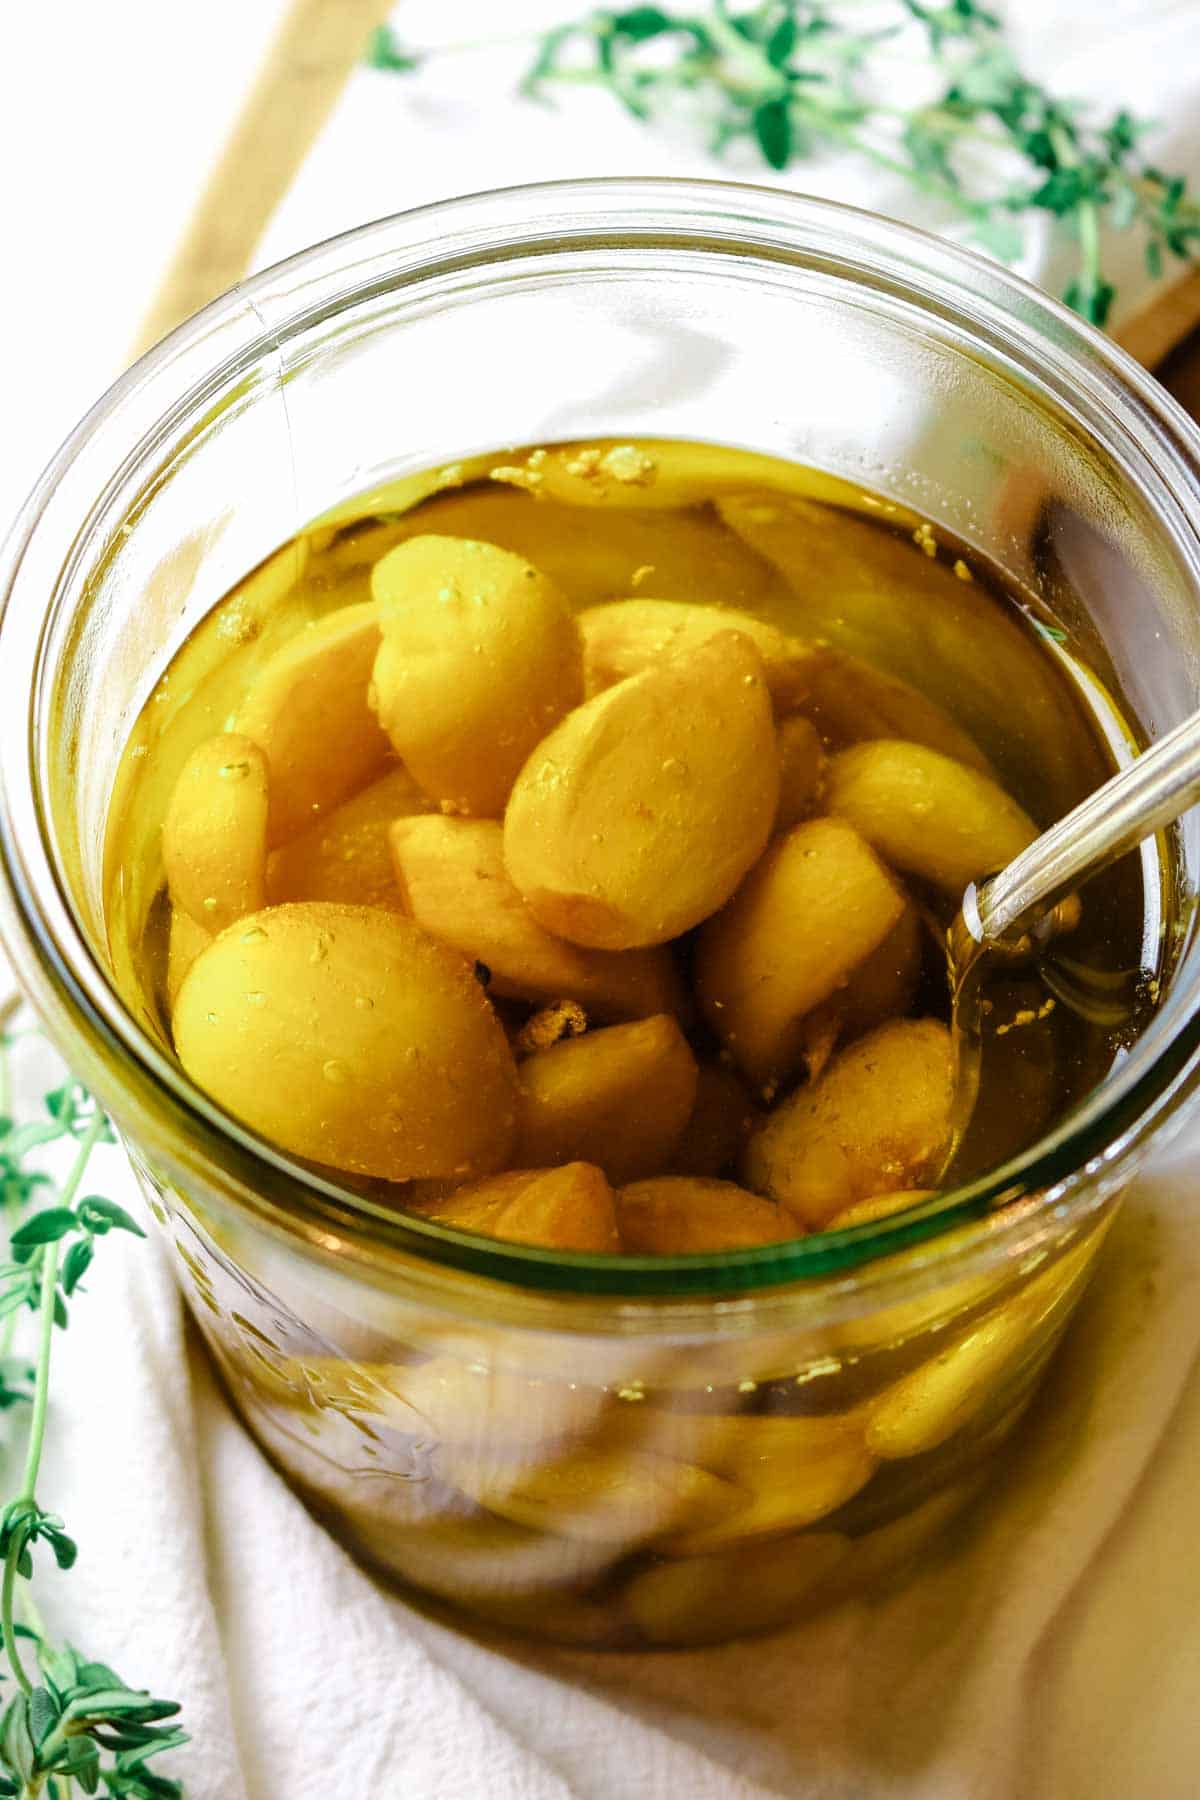 garlic in olive oil in jar.